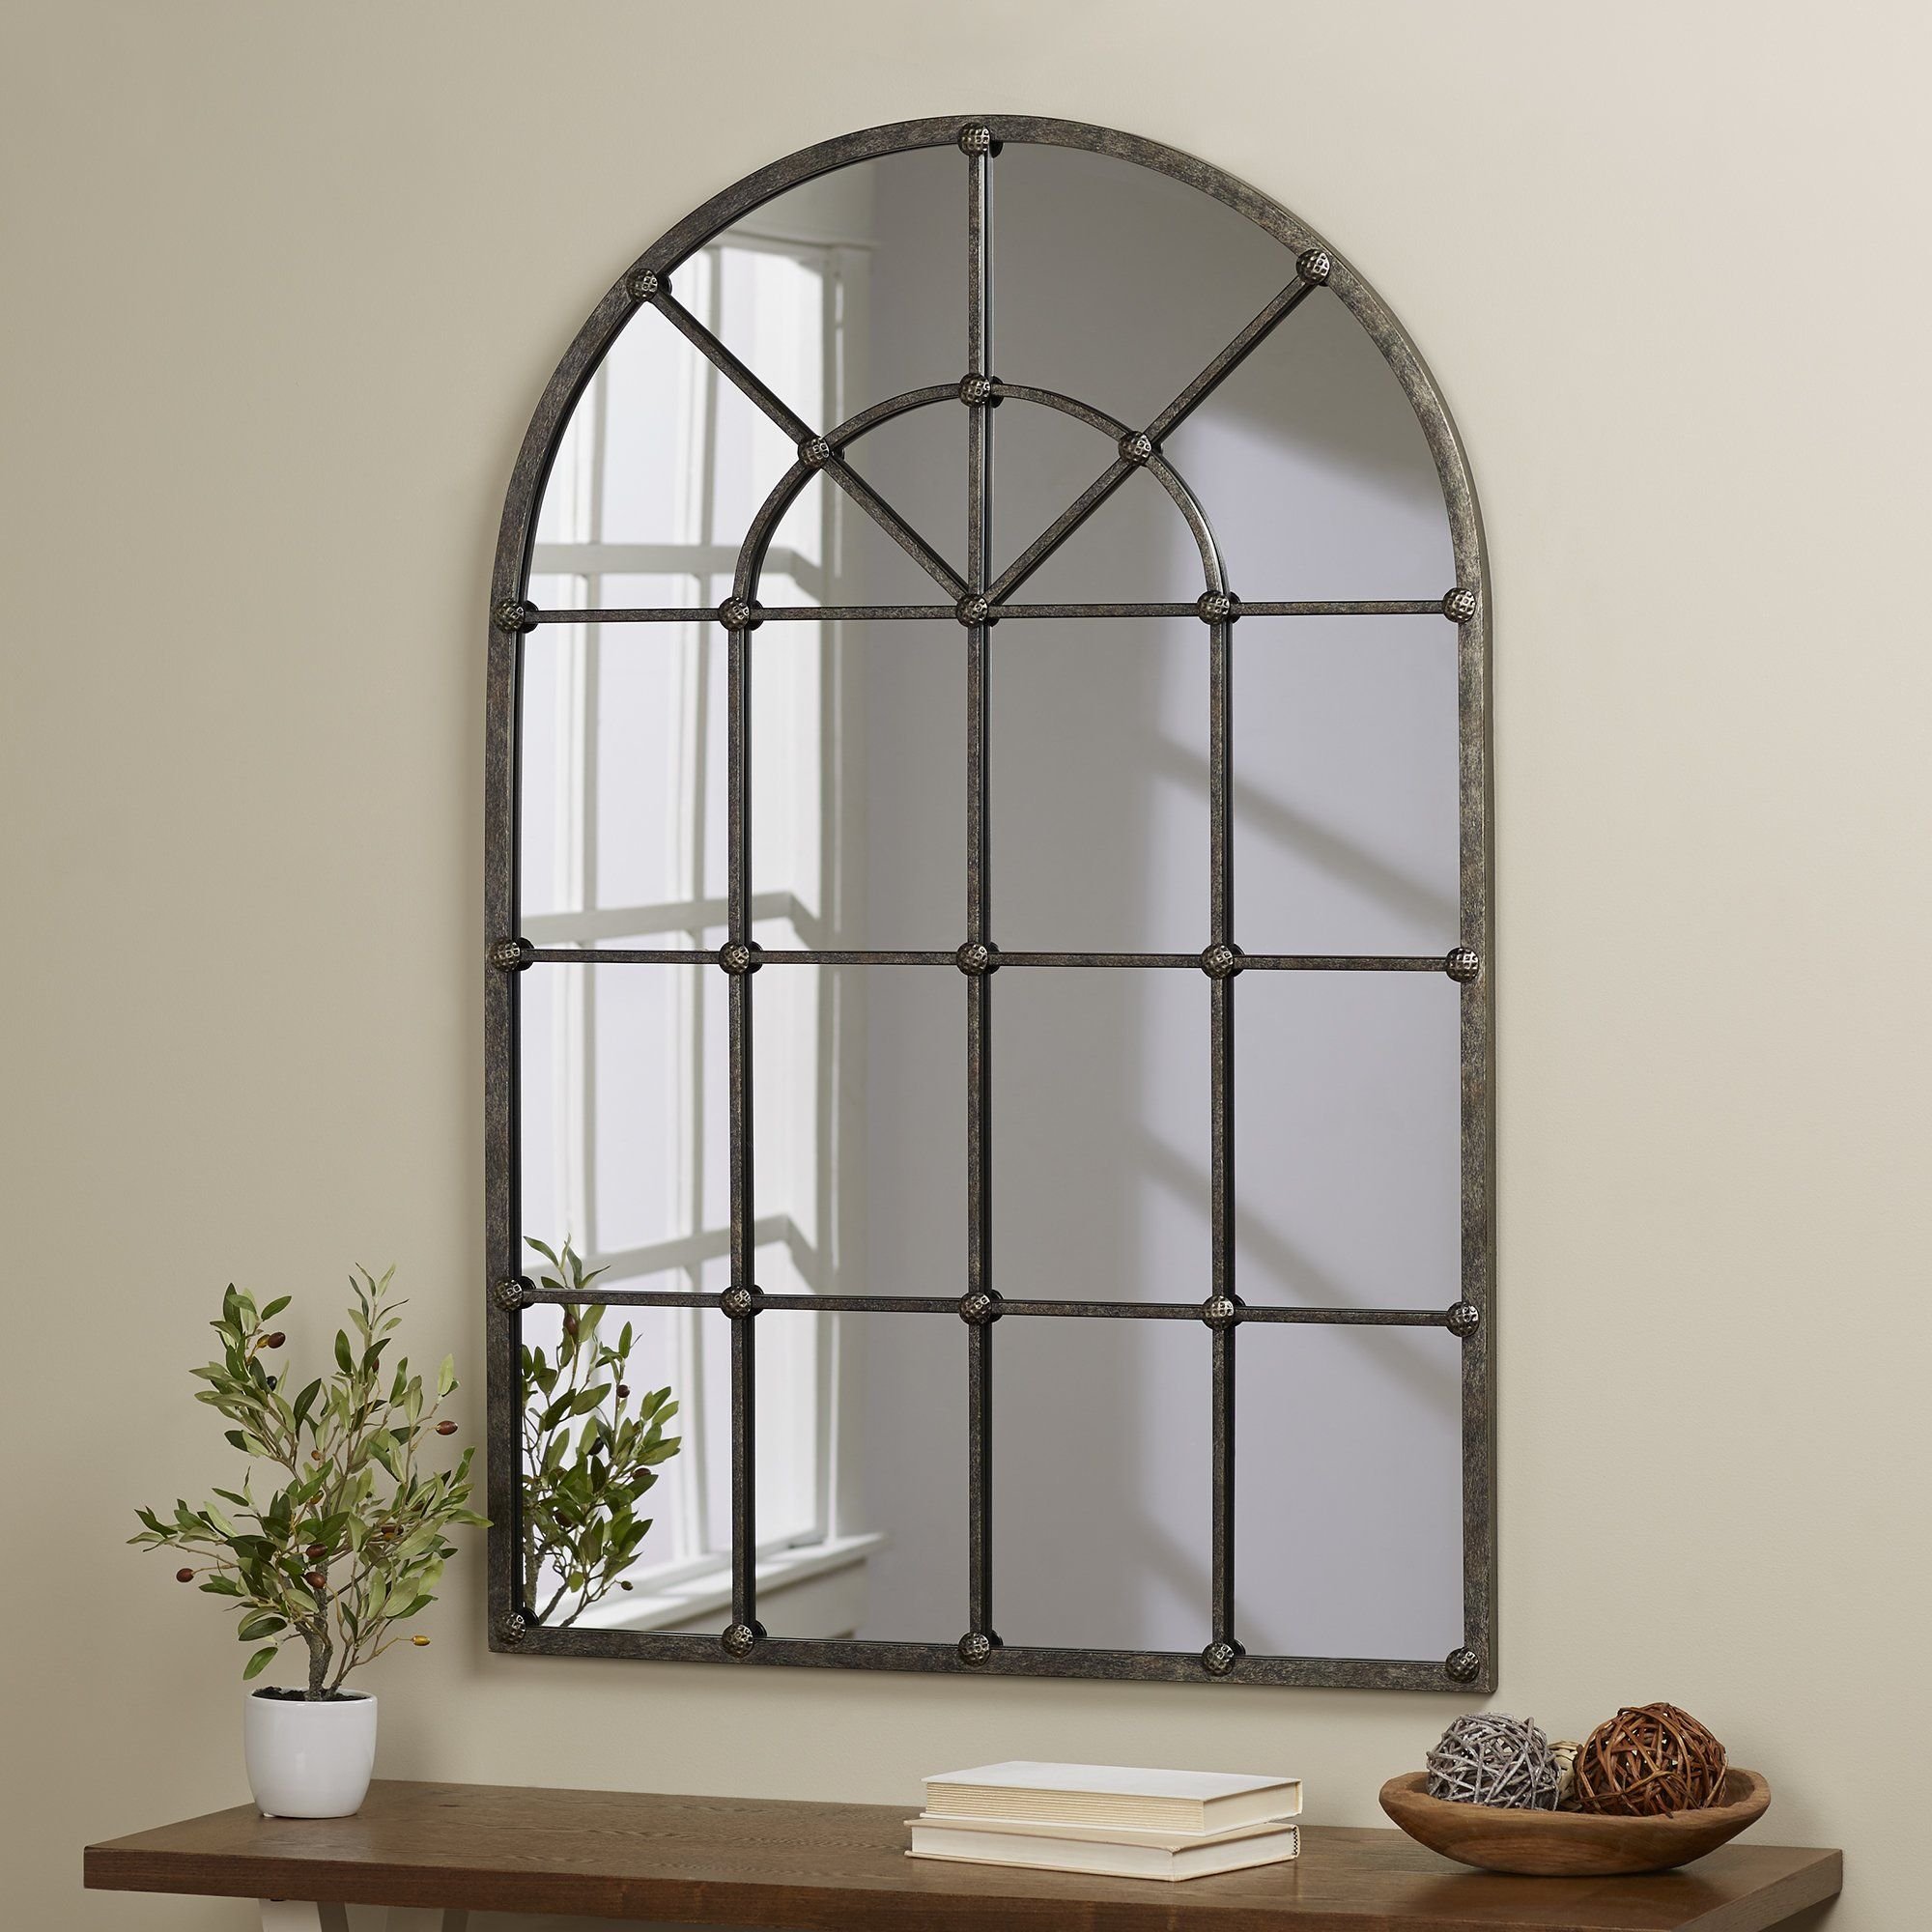 Window elements. Зеркало арочное Прованс. Зеркало-окно Прованс 120x70. Фальшокно в интерьере Прованс. Декоративное окно в интерьере.